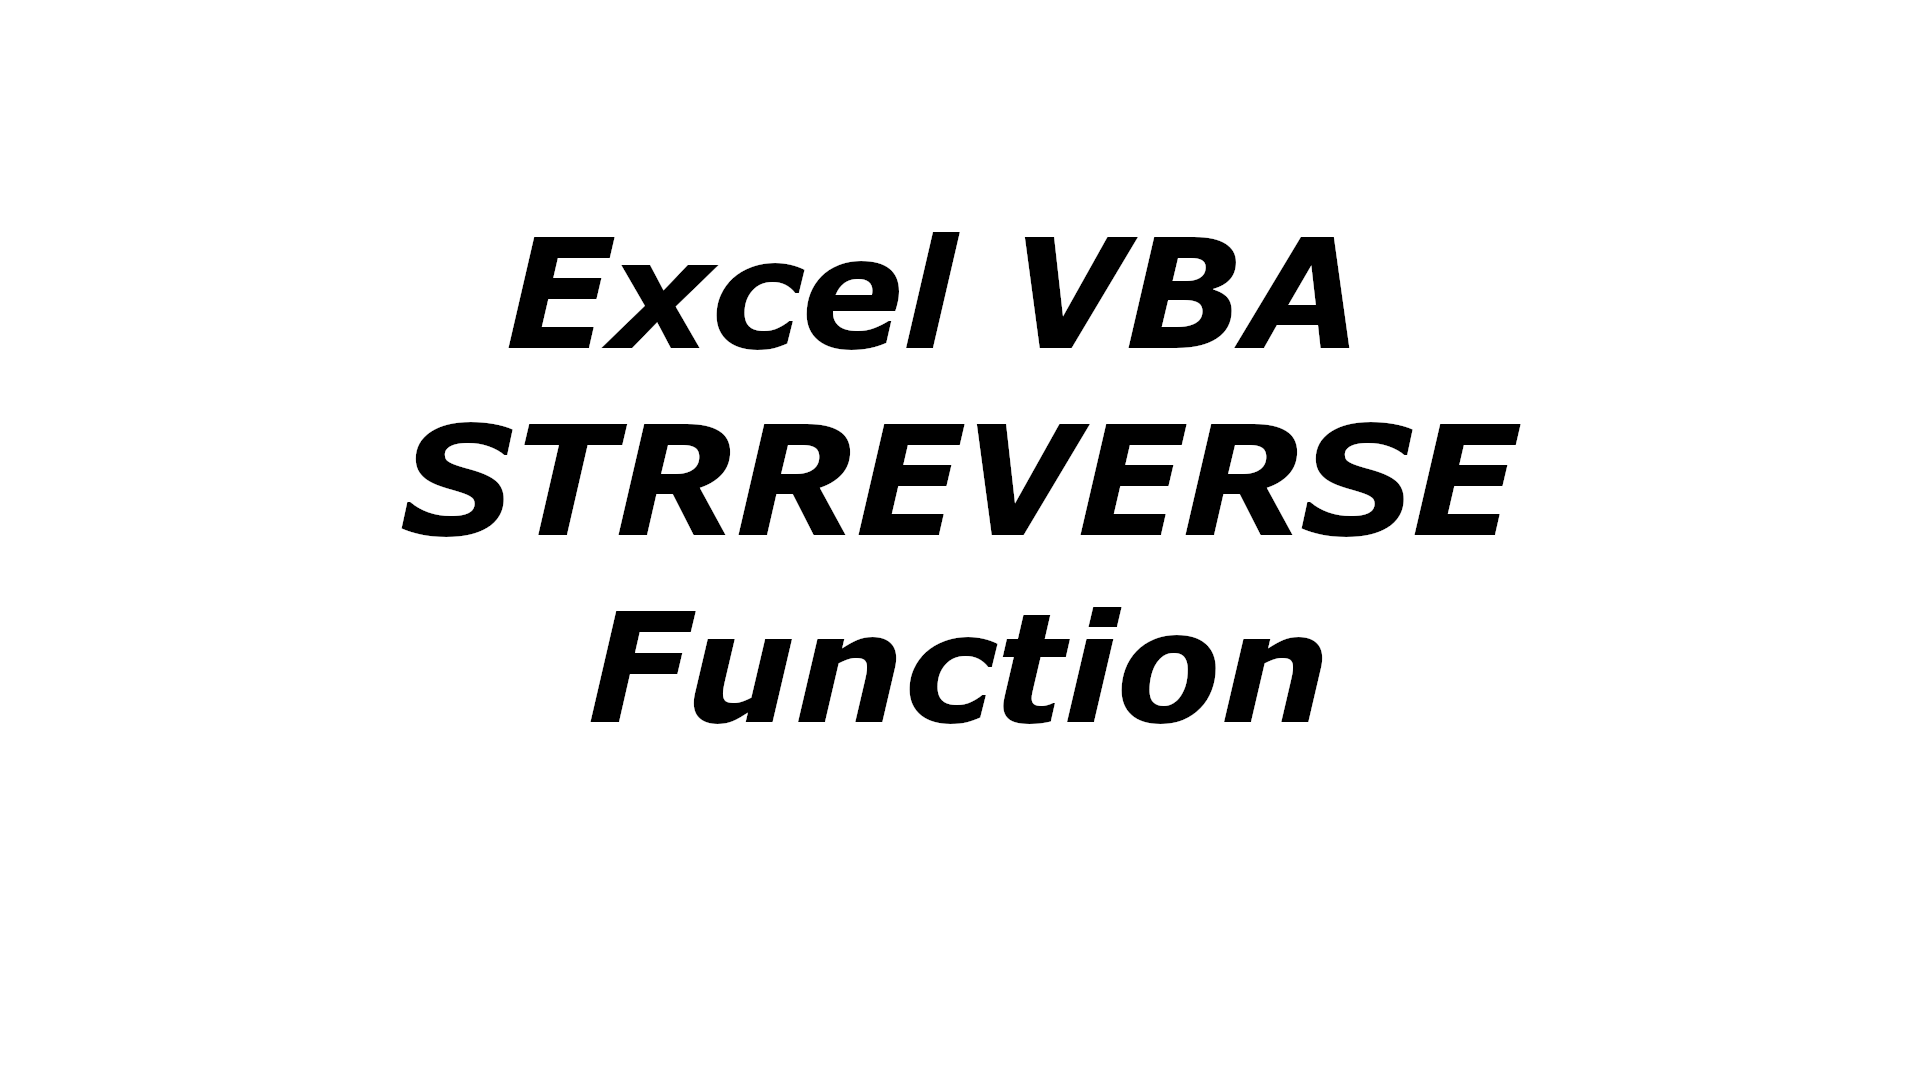 Excel VBA STRREVERSE function